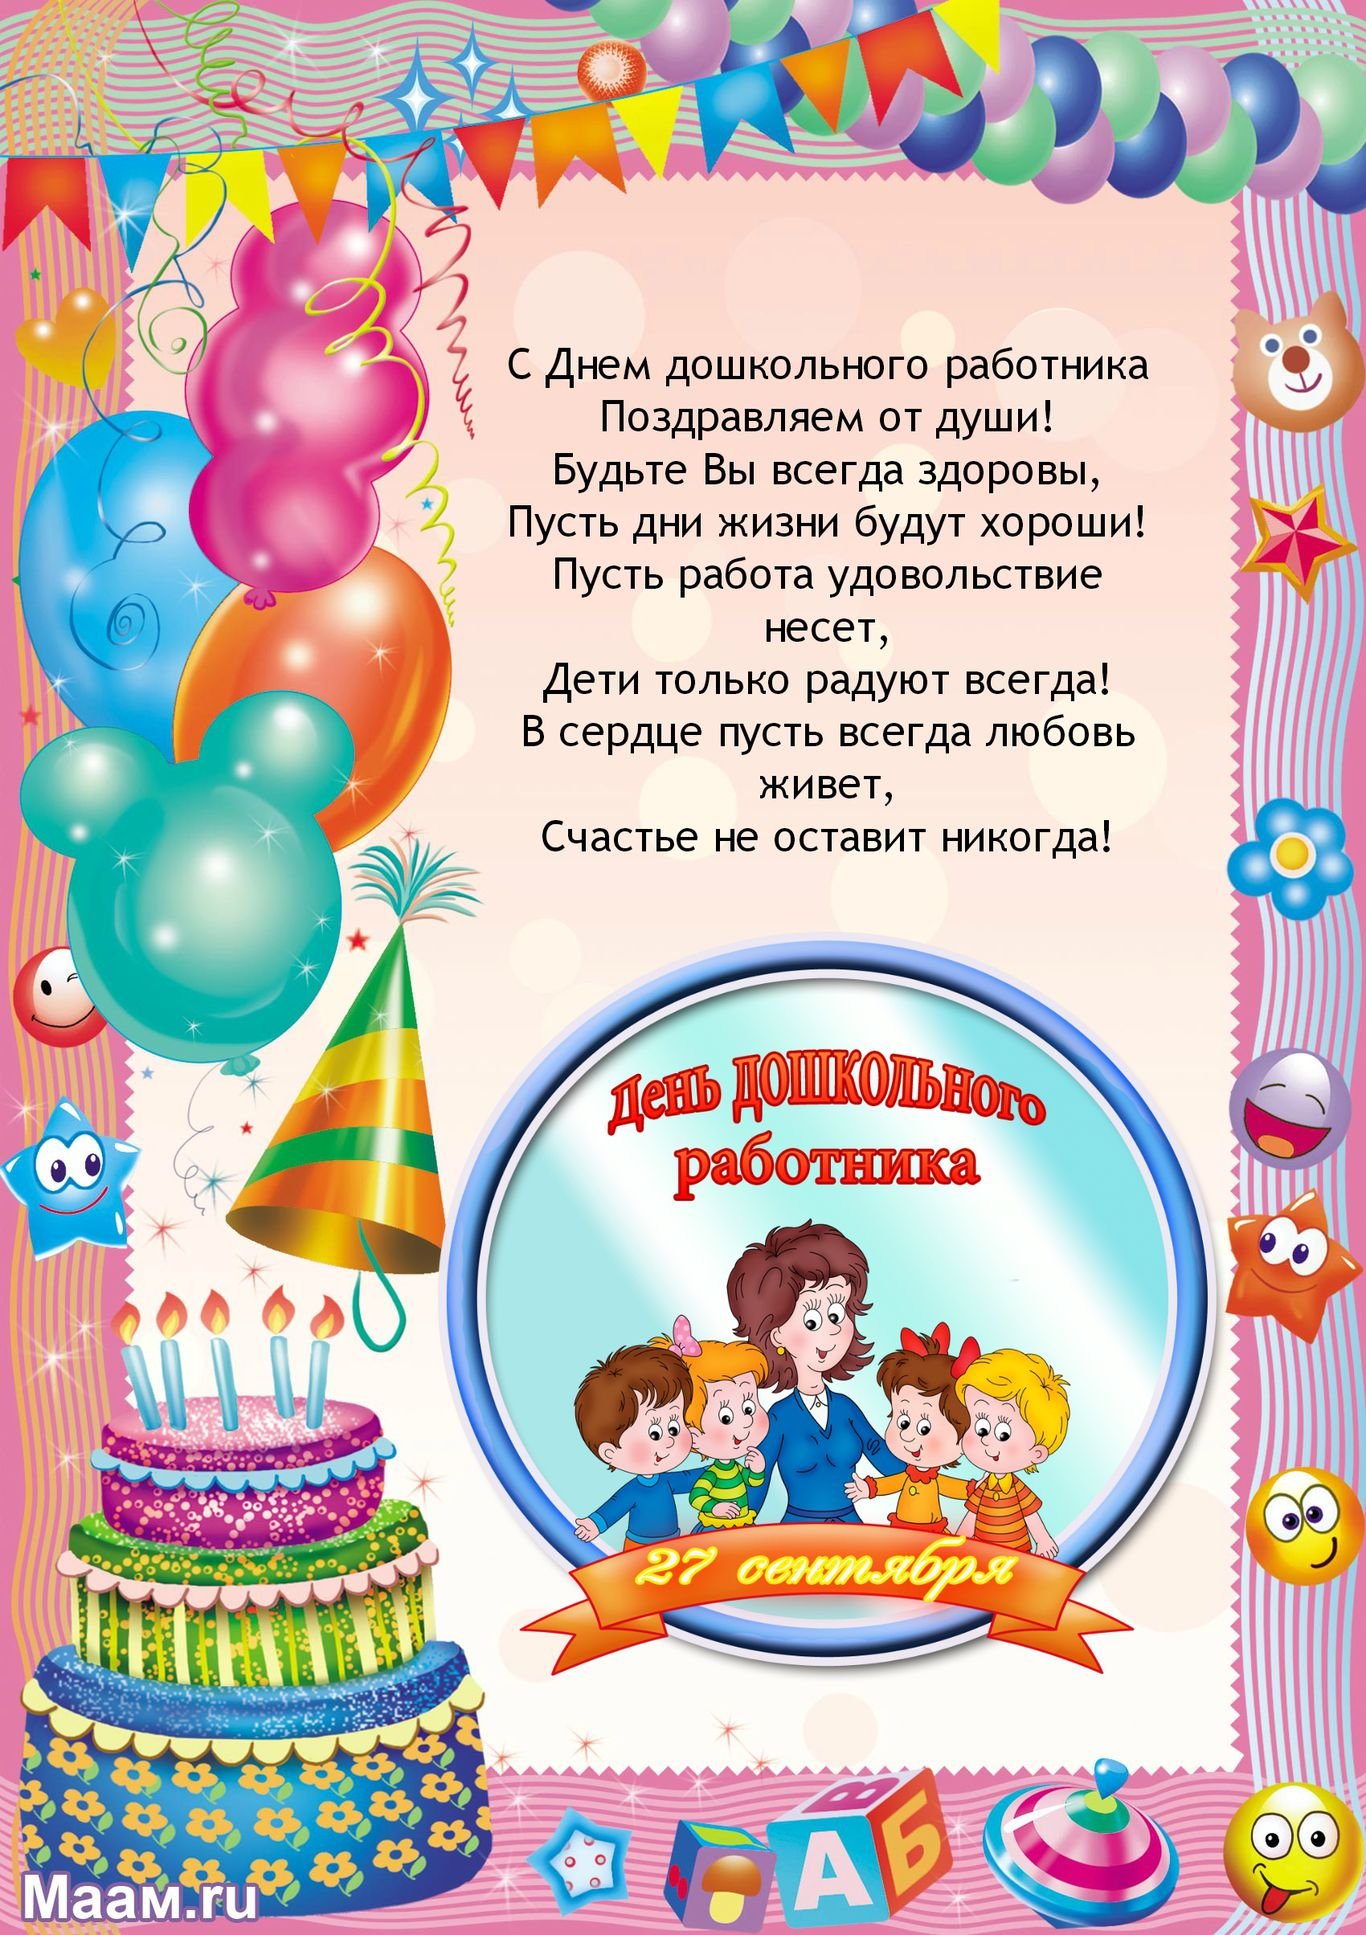 Поздравление коллег с днем рождения детского сада. С днем рождения воспитателю. С днём рождения воспитаиелю. Поздравления с днём рождения воспитательнице детского сада. Поздравление с днем рождения детям в детском саду.